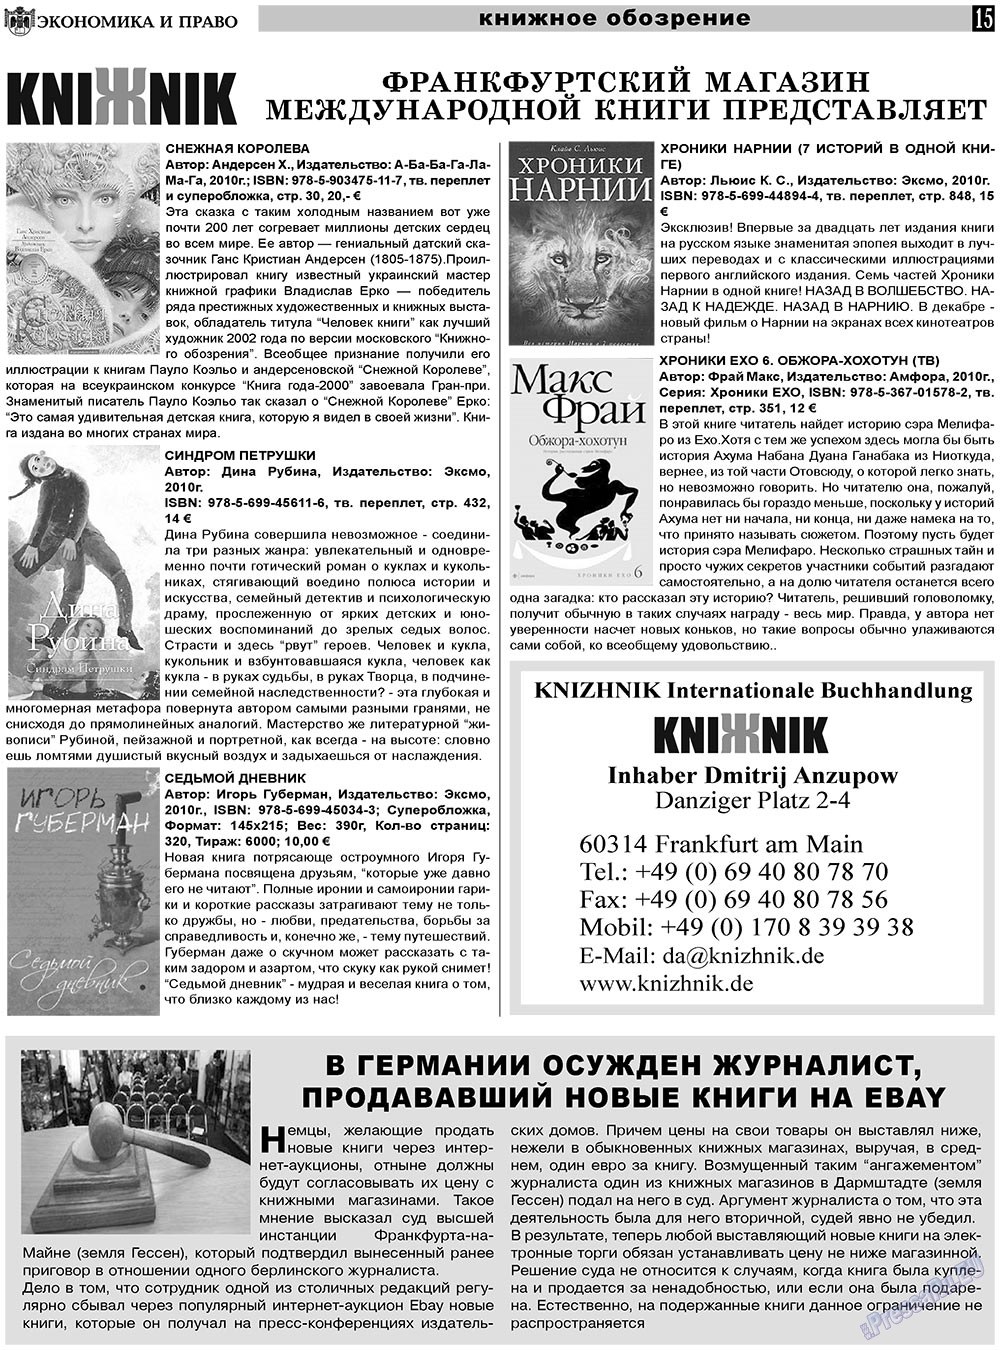 Экономика и право, газета. 2011 №1 стр.15